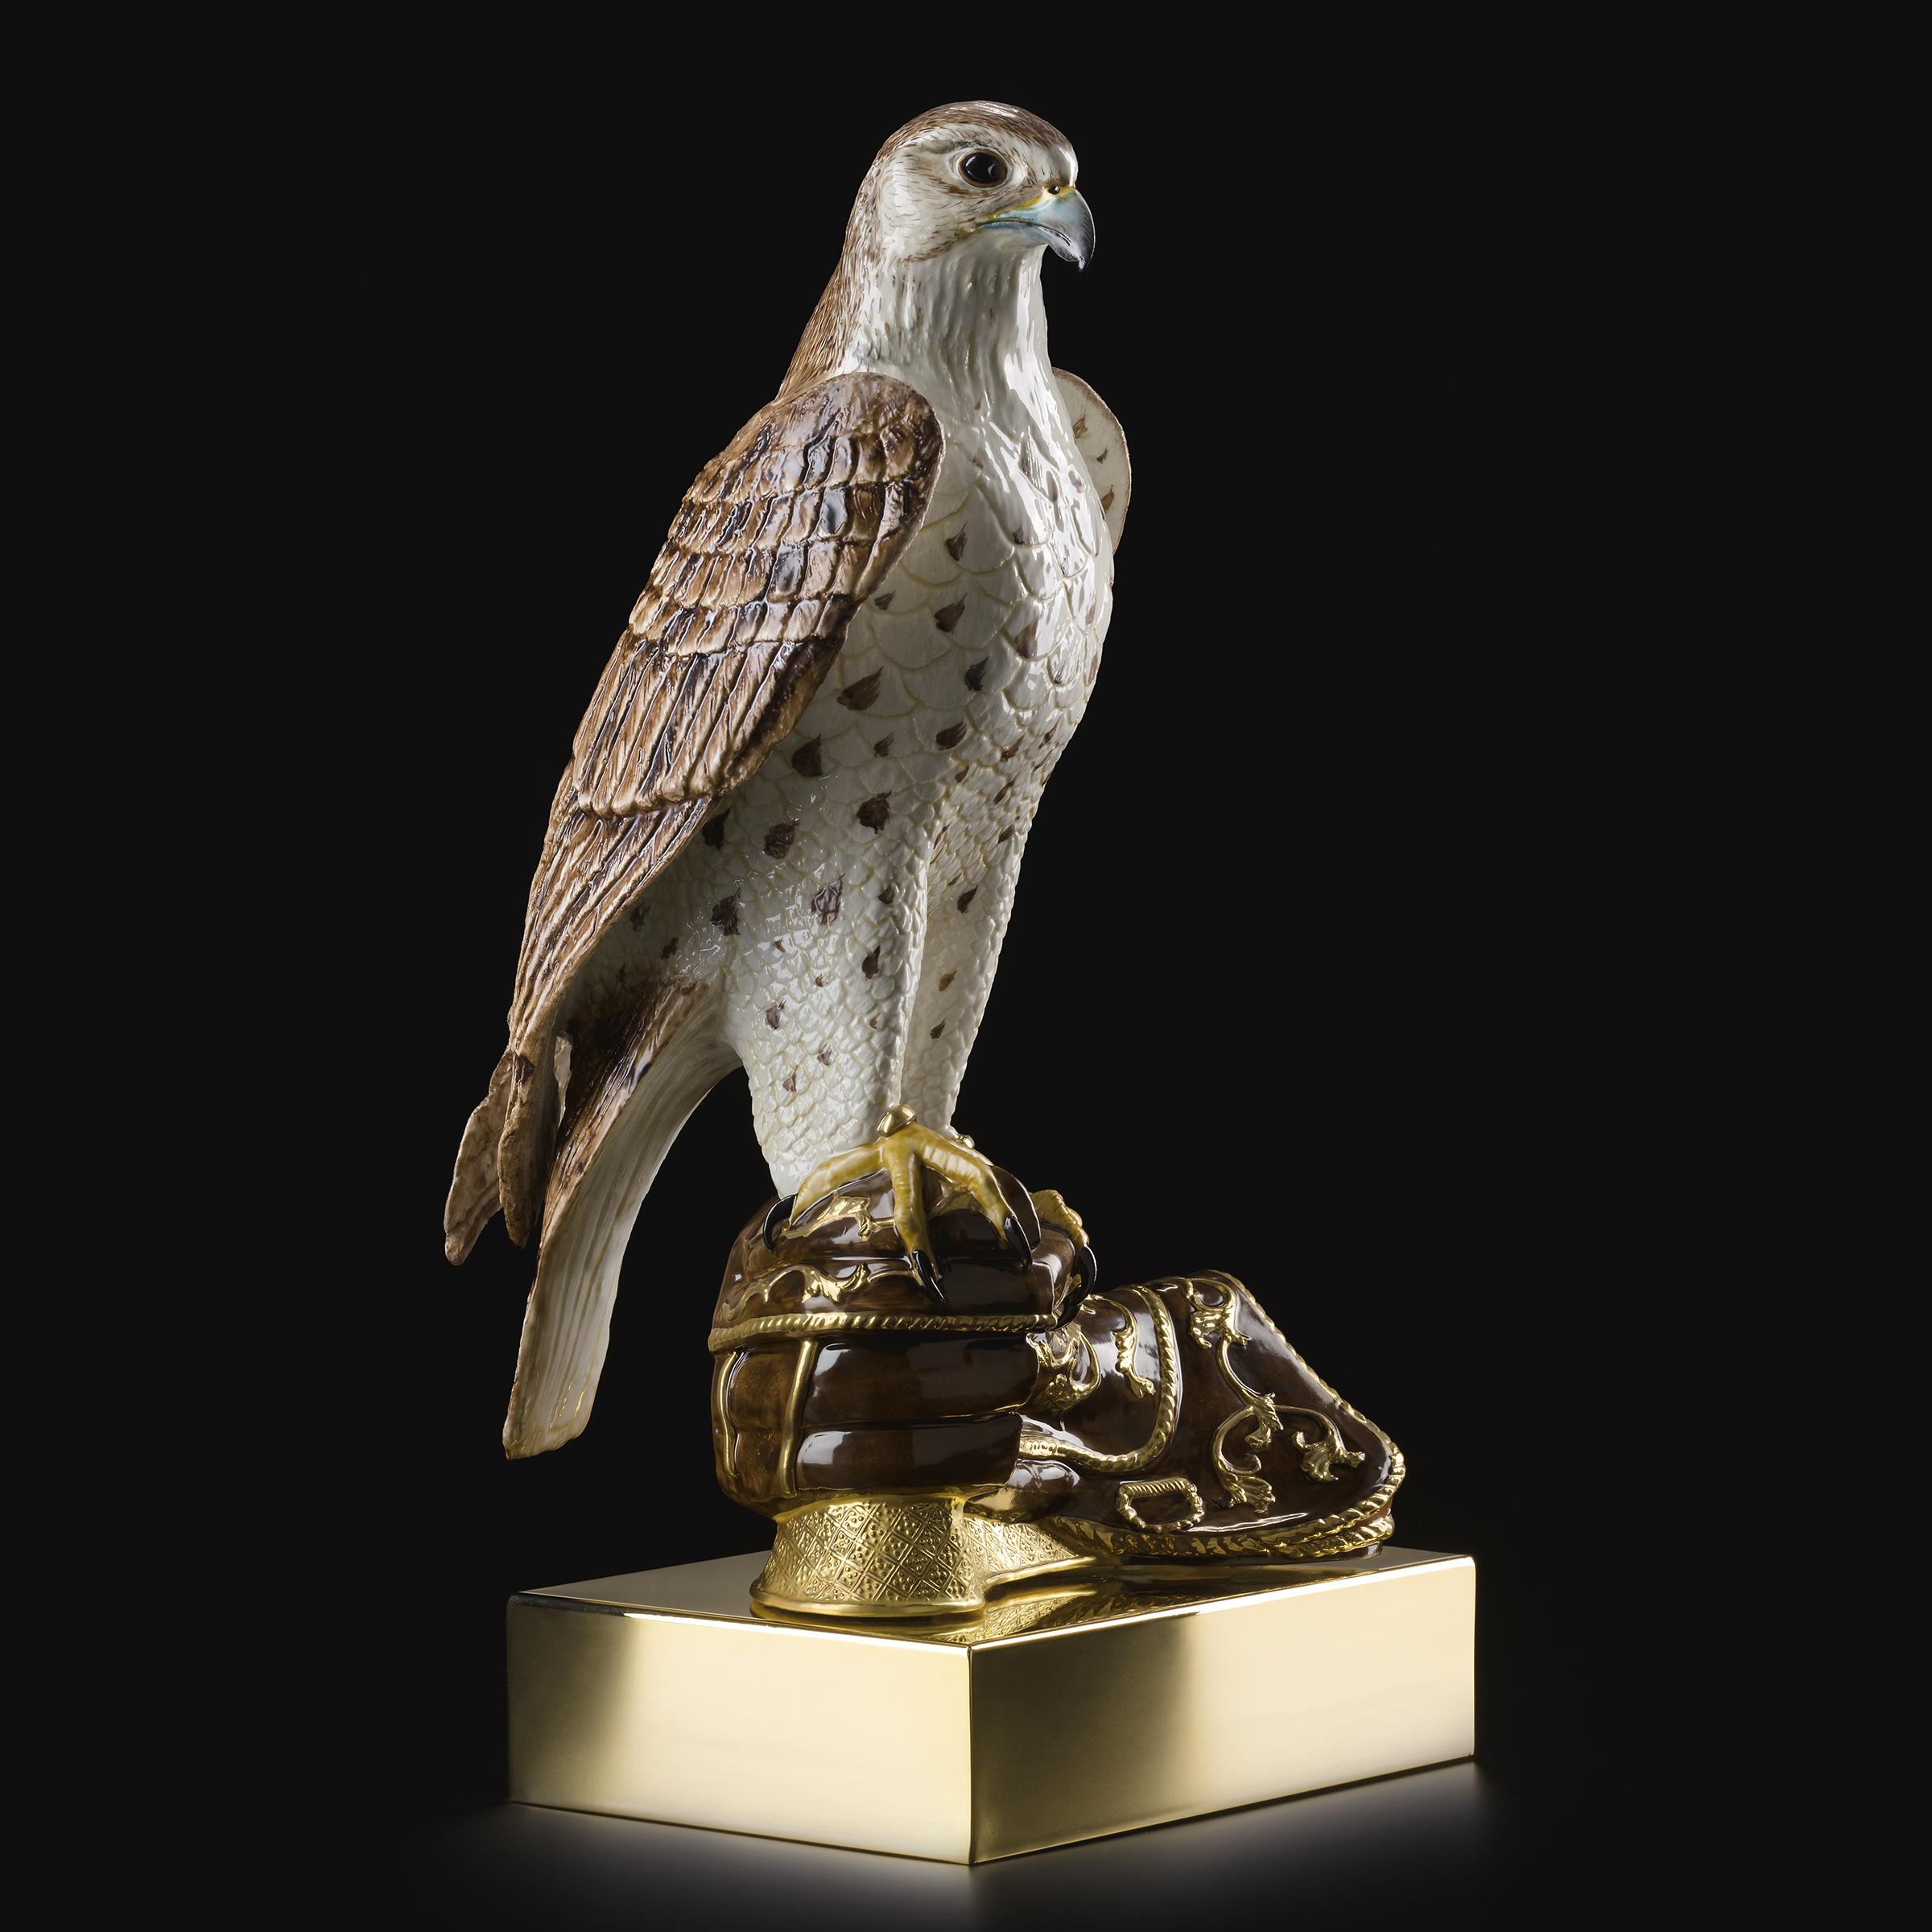 Sculpture de faucon en porcelaine faite à la main,
pièce peinte à la main avec finition en or 24 carats
Edition limitée à 300 pièces.